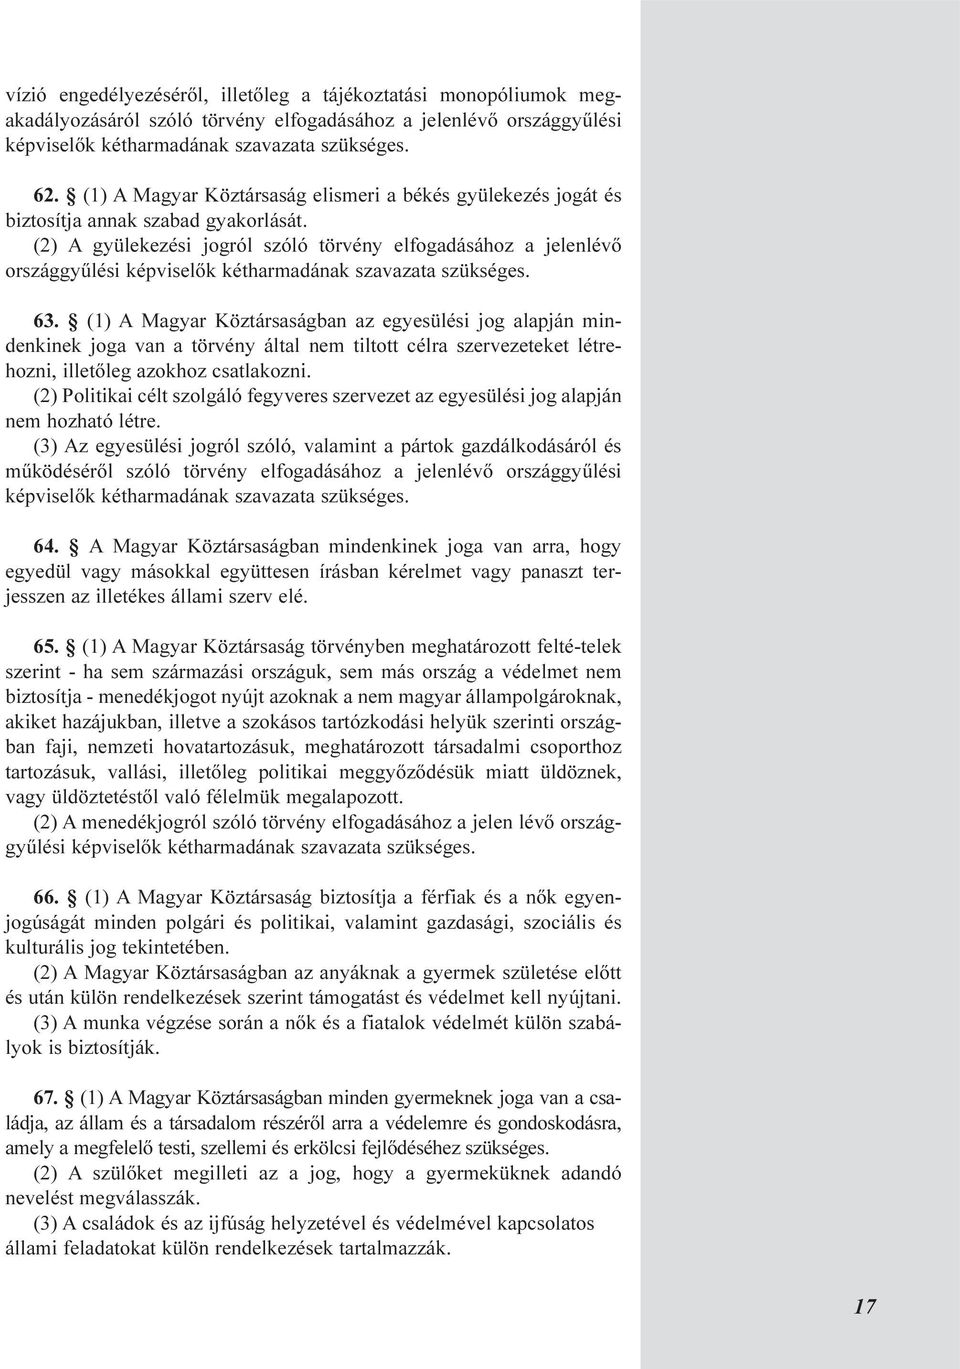 (2) A gyülekezési jogról szóló törvény elfogadásához a jelenlévõ országgyûlési képviselõk kétharmadának szavazata szükséges. 63.